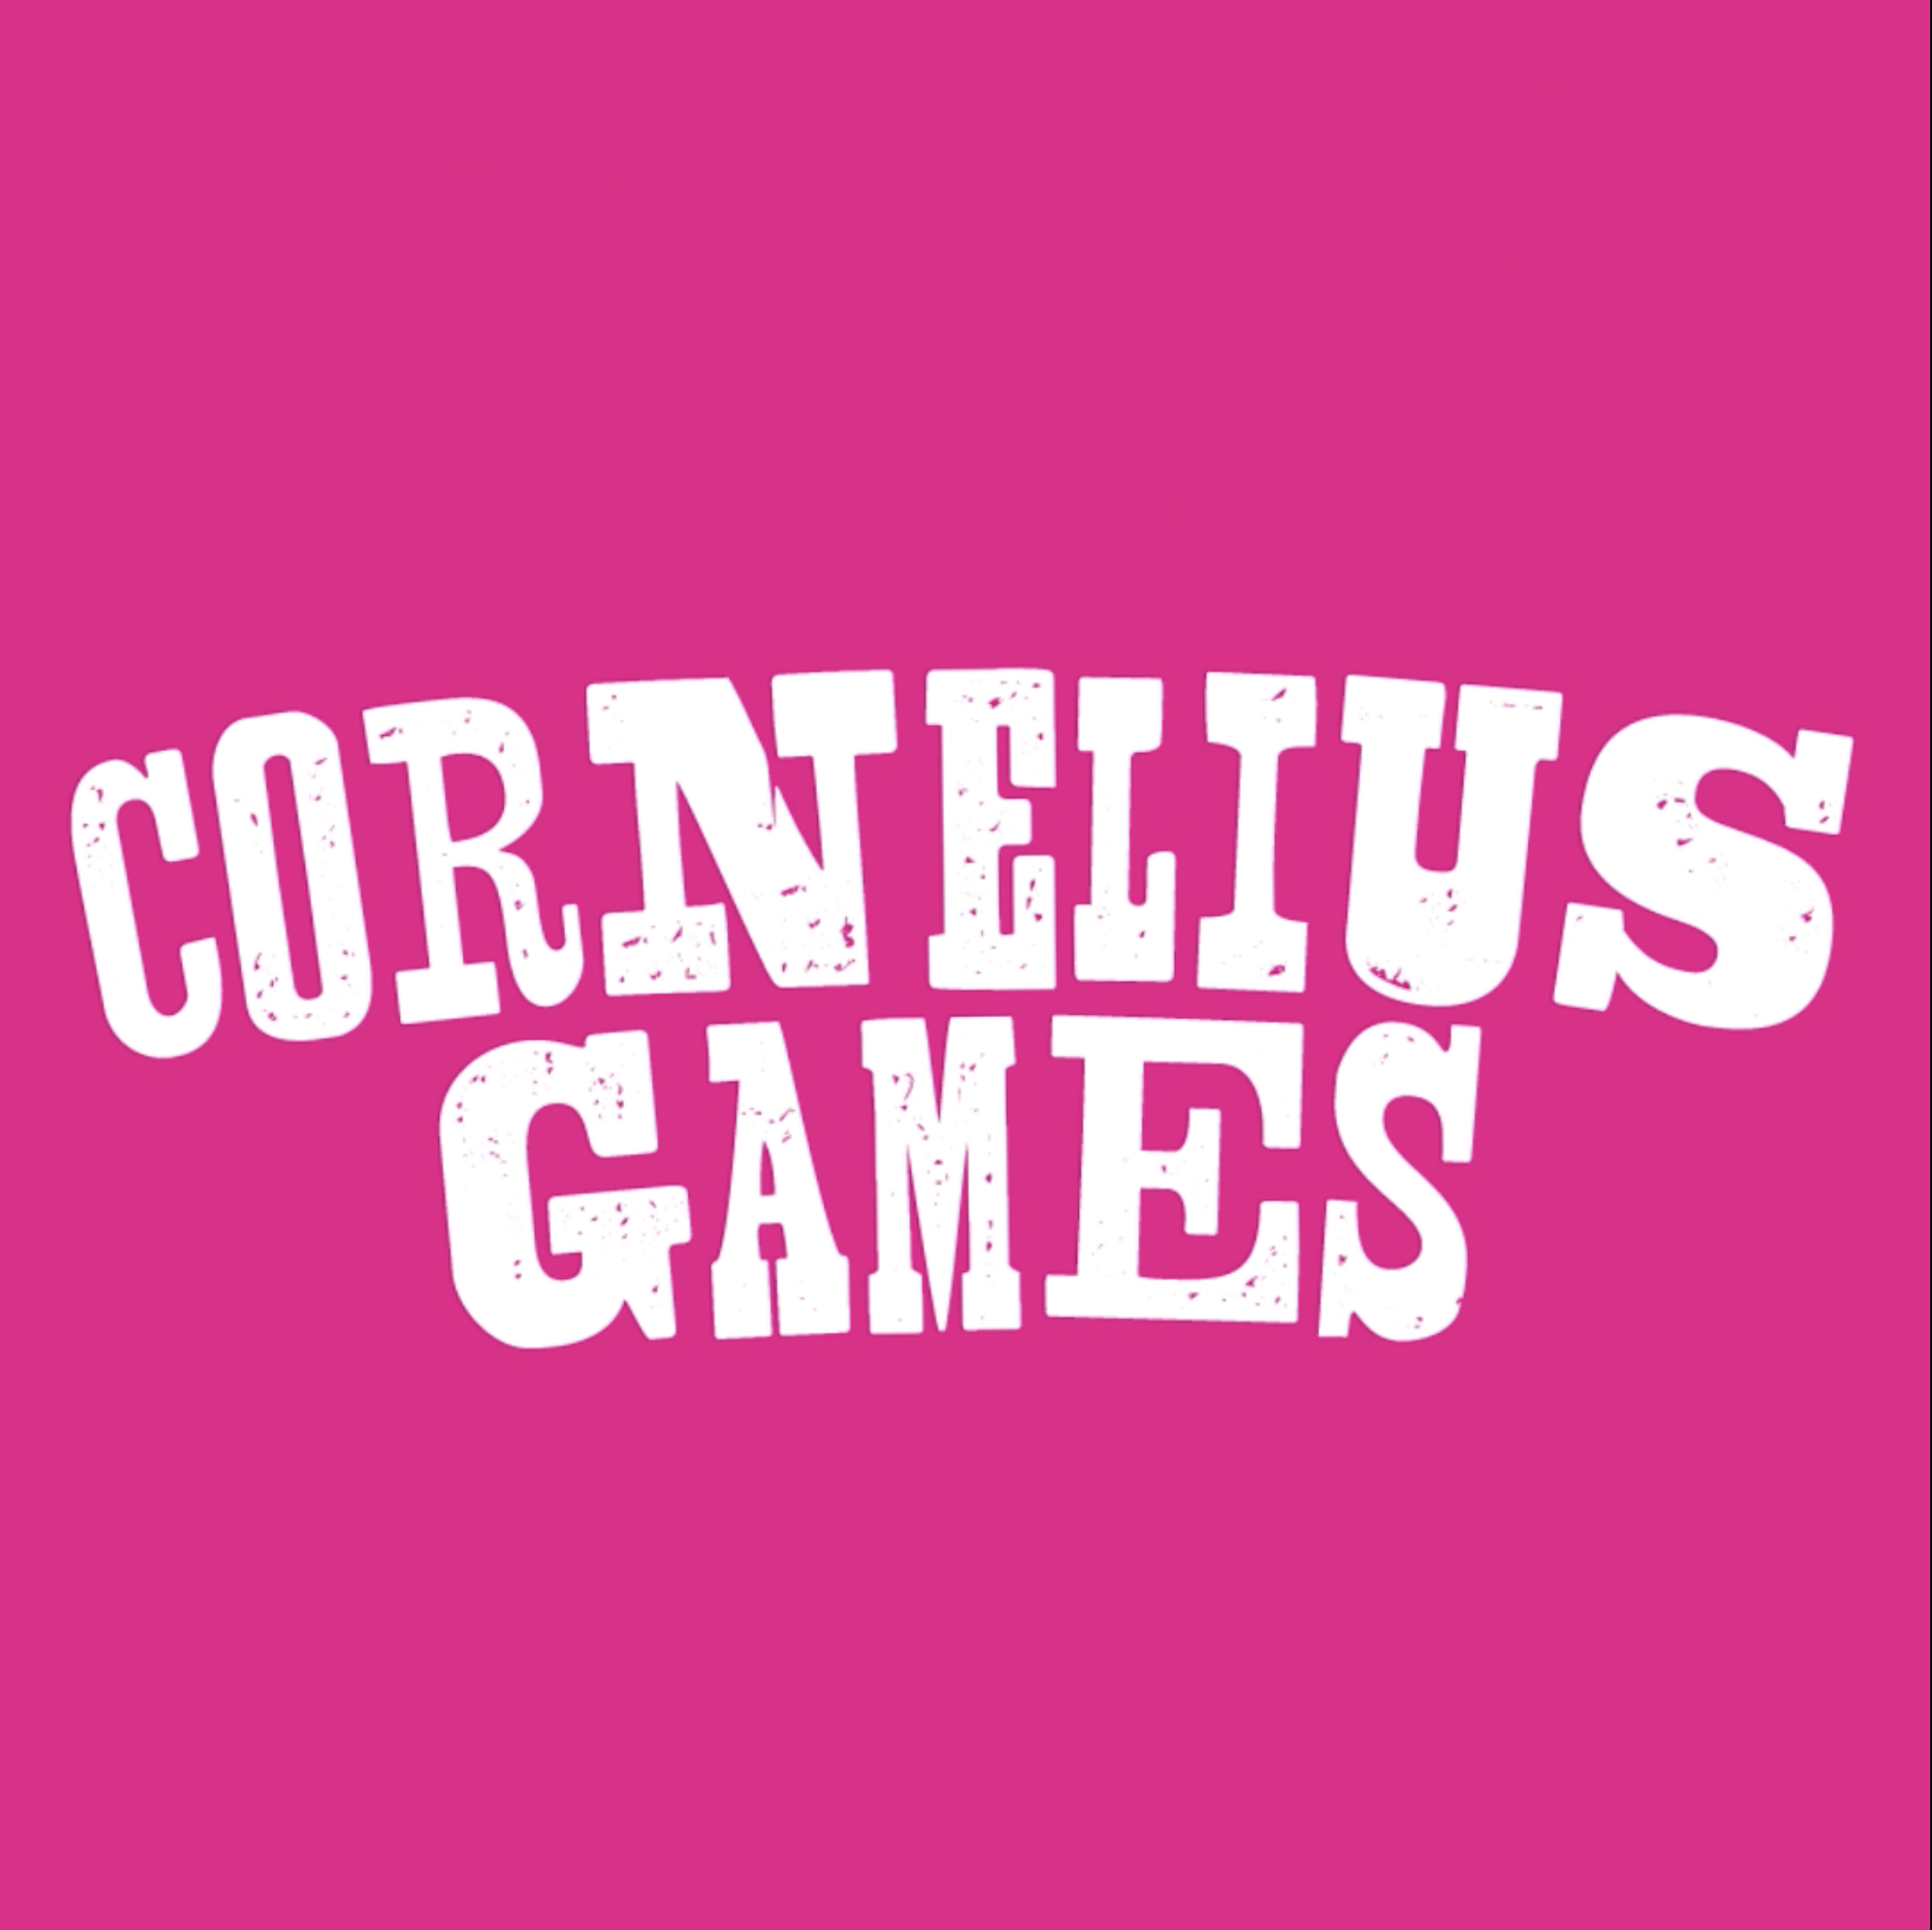 Cornelius Games social media animation, thumbnail shows white cornelius games text on pink background.